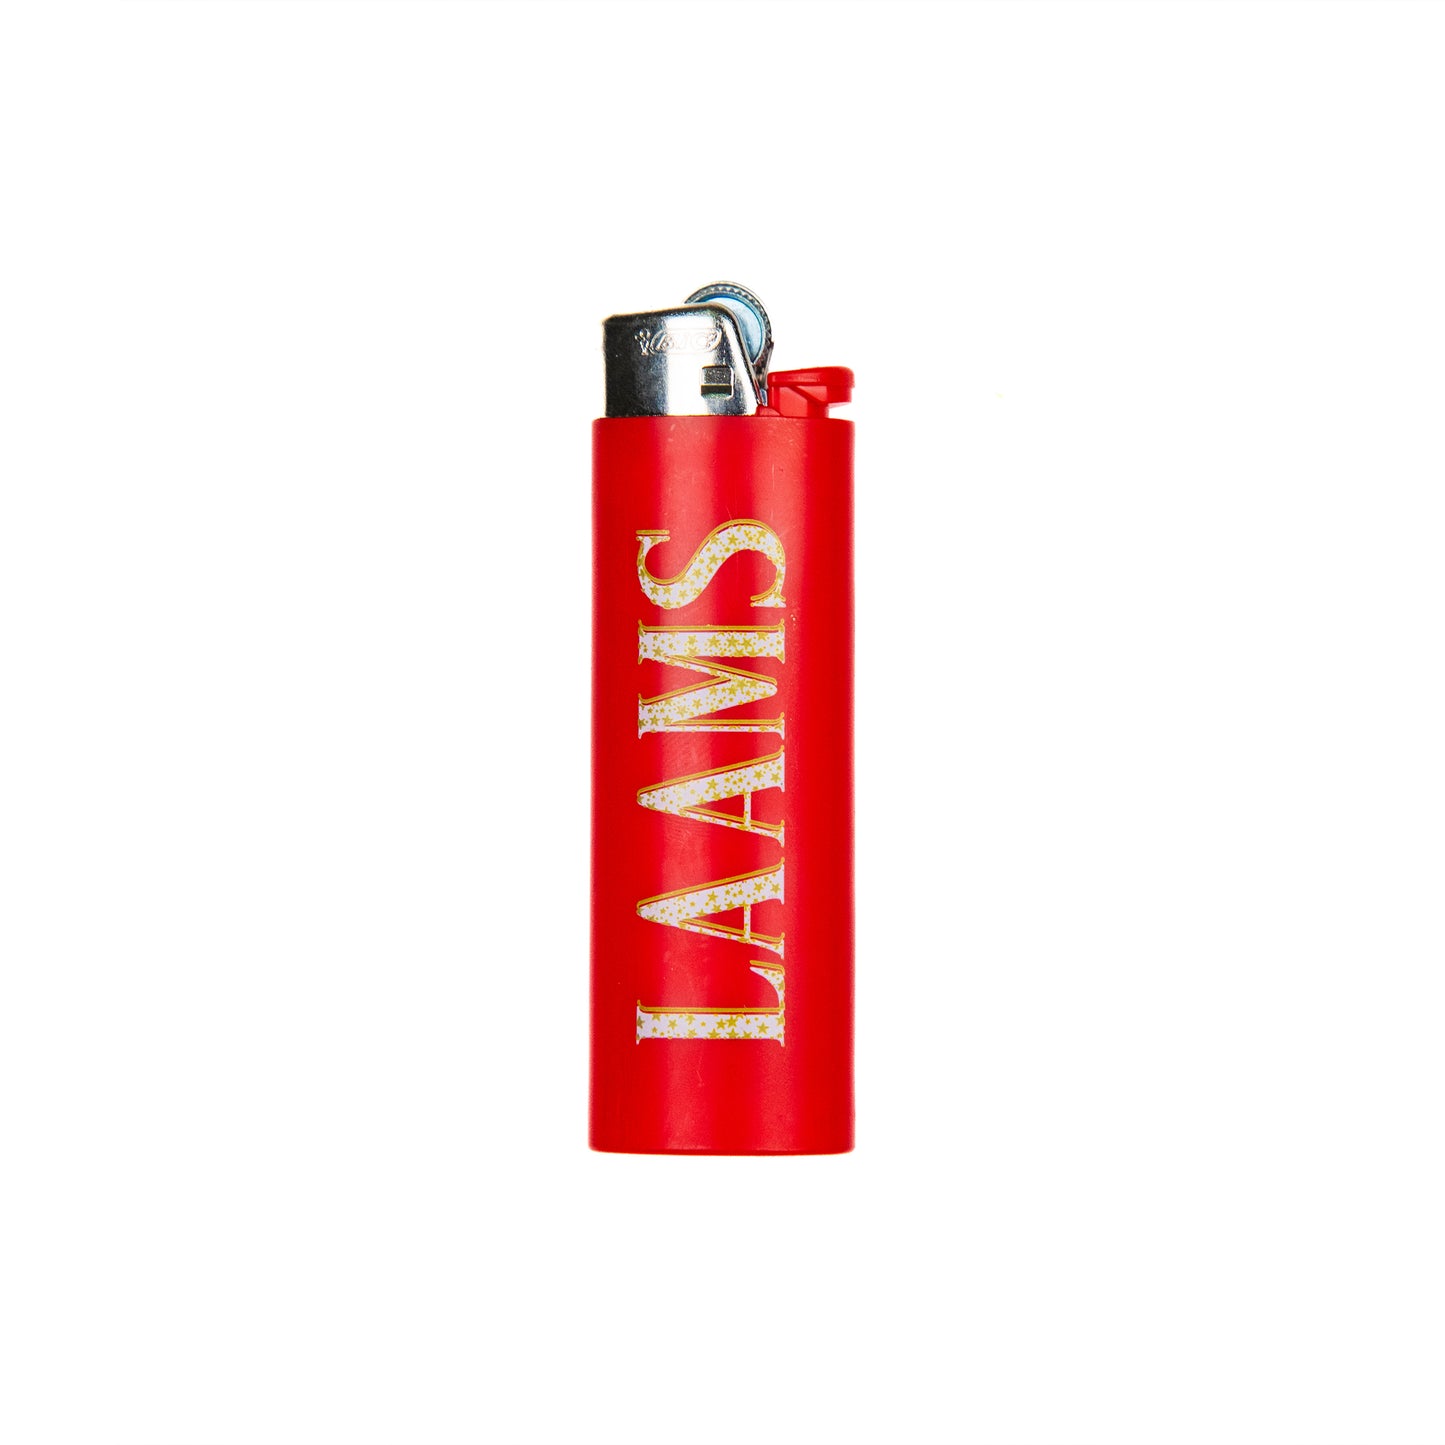 LAAMS STAR Hi Lighter